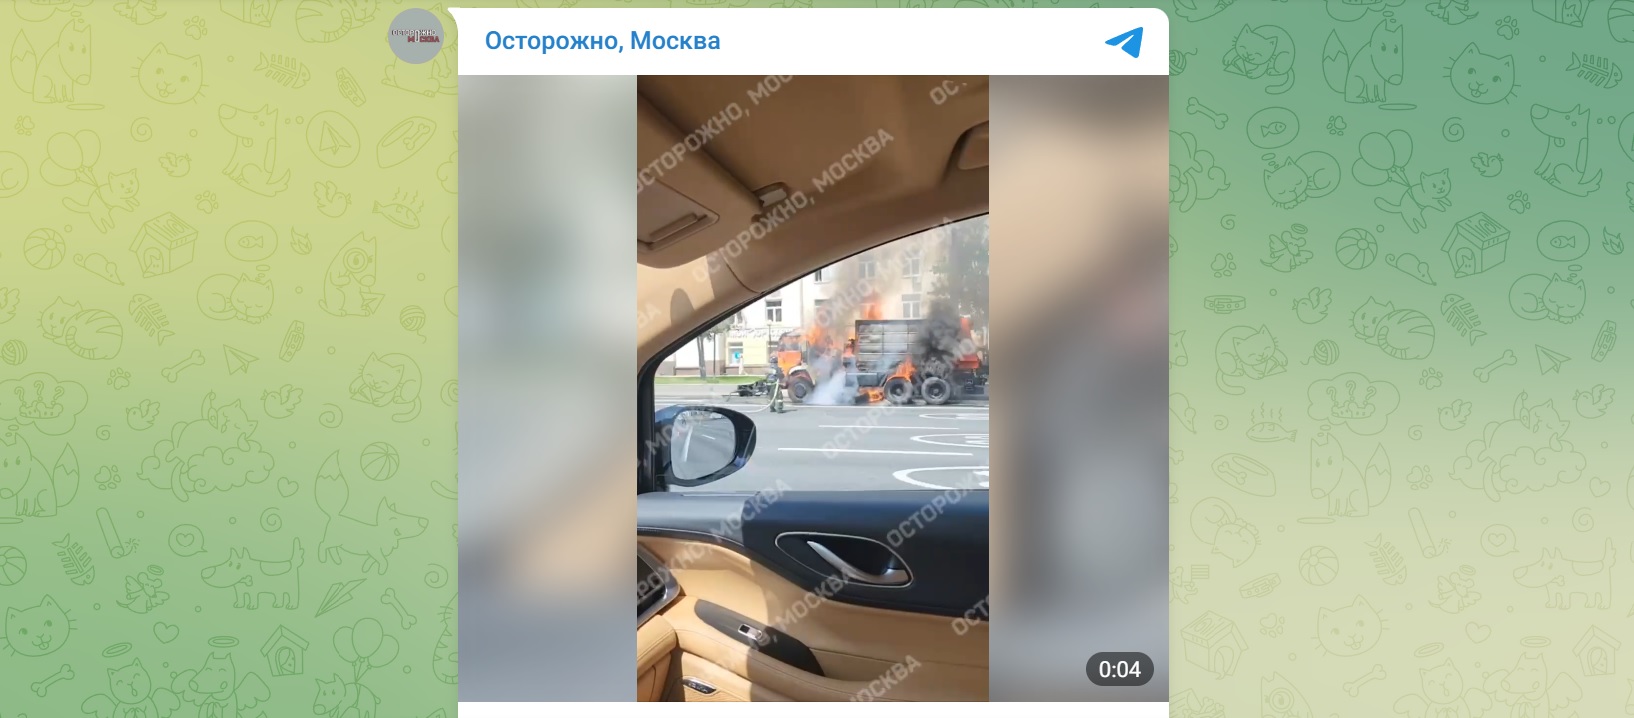 Поливальная машина сгорела в Москве